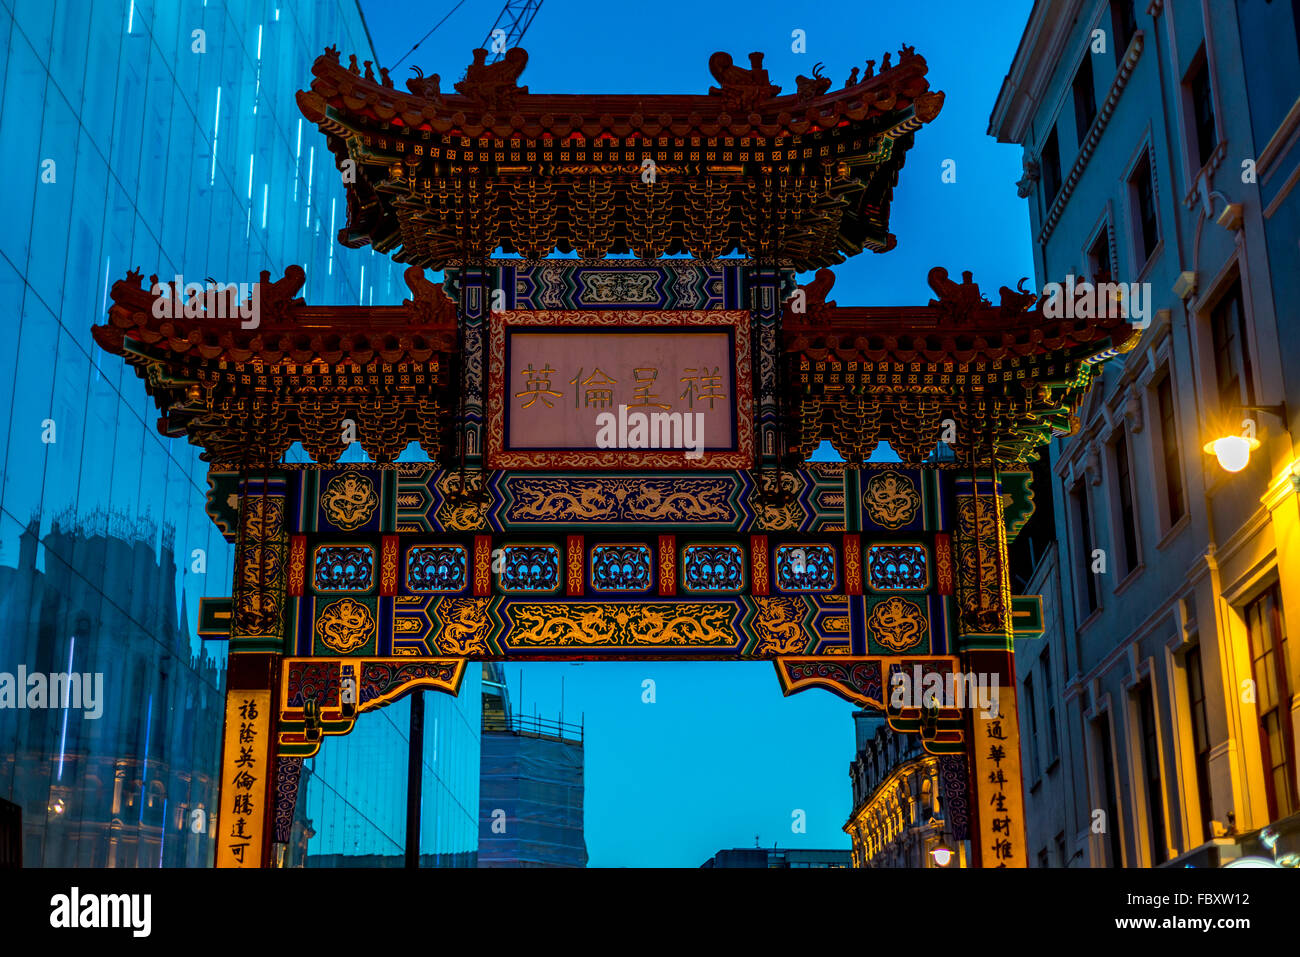 Vista de decorado arco chino en China Town, Londres Foto de stock